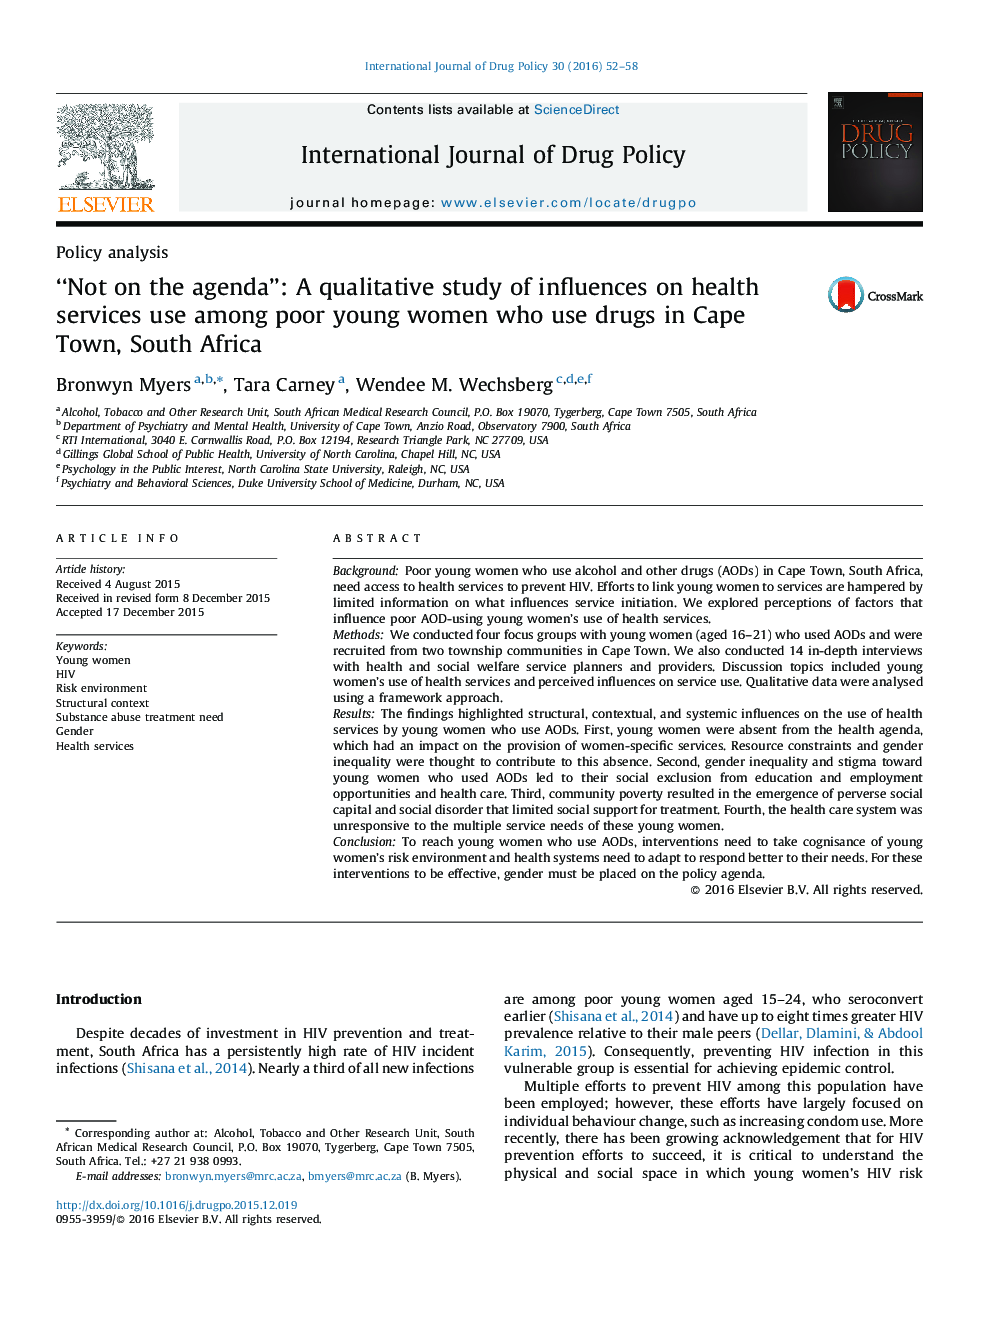 "نه در برنامه": مطالعه کیفی تأثیرات بر استفاده از خدمات بهداشتی در بین زنان فقیر جوان در کیپ تاون، آفریقای جنوبی که از مواد مخدر استفاده می کنند